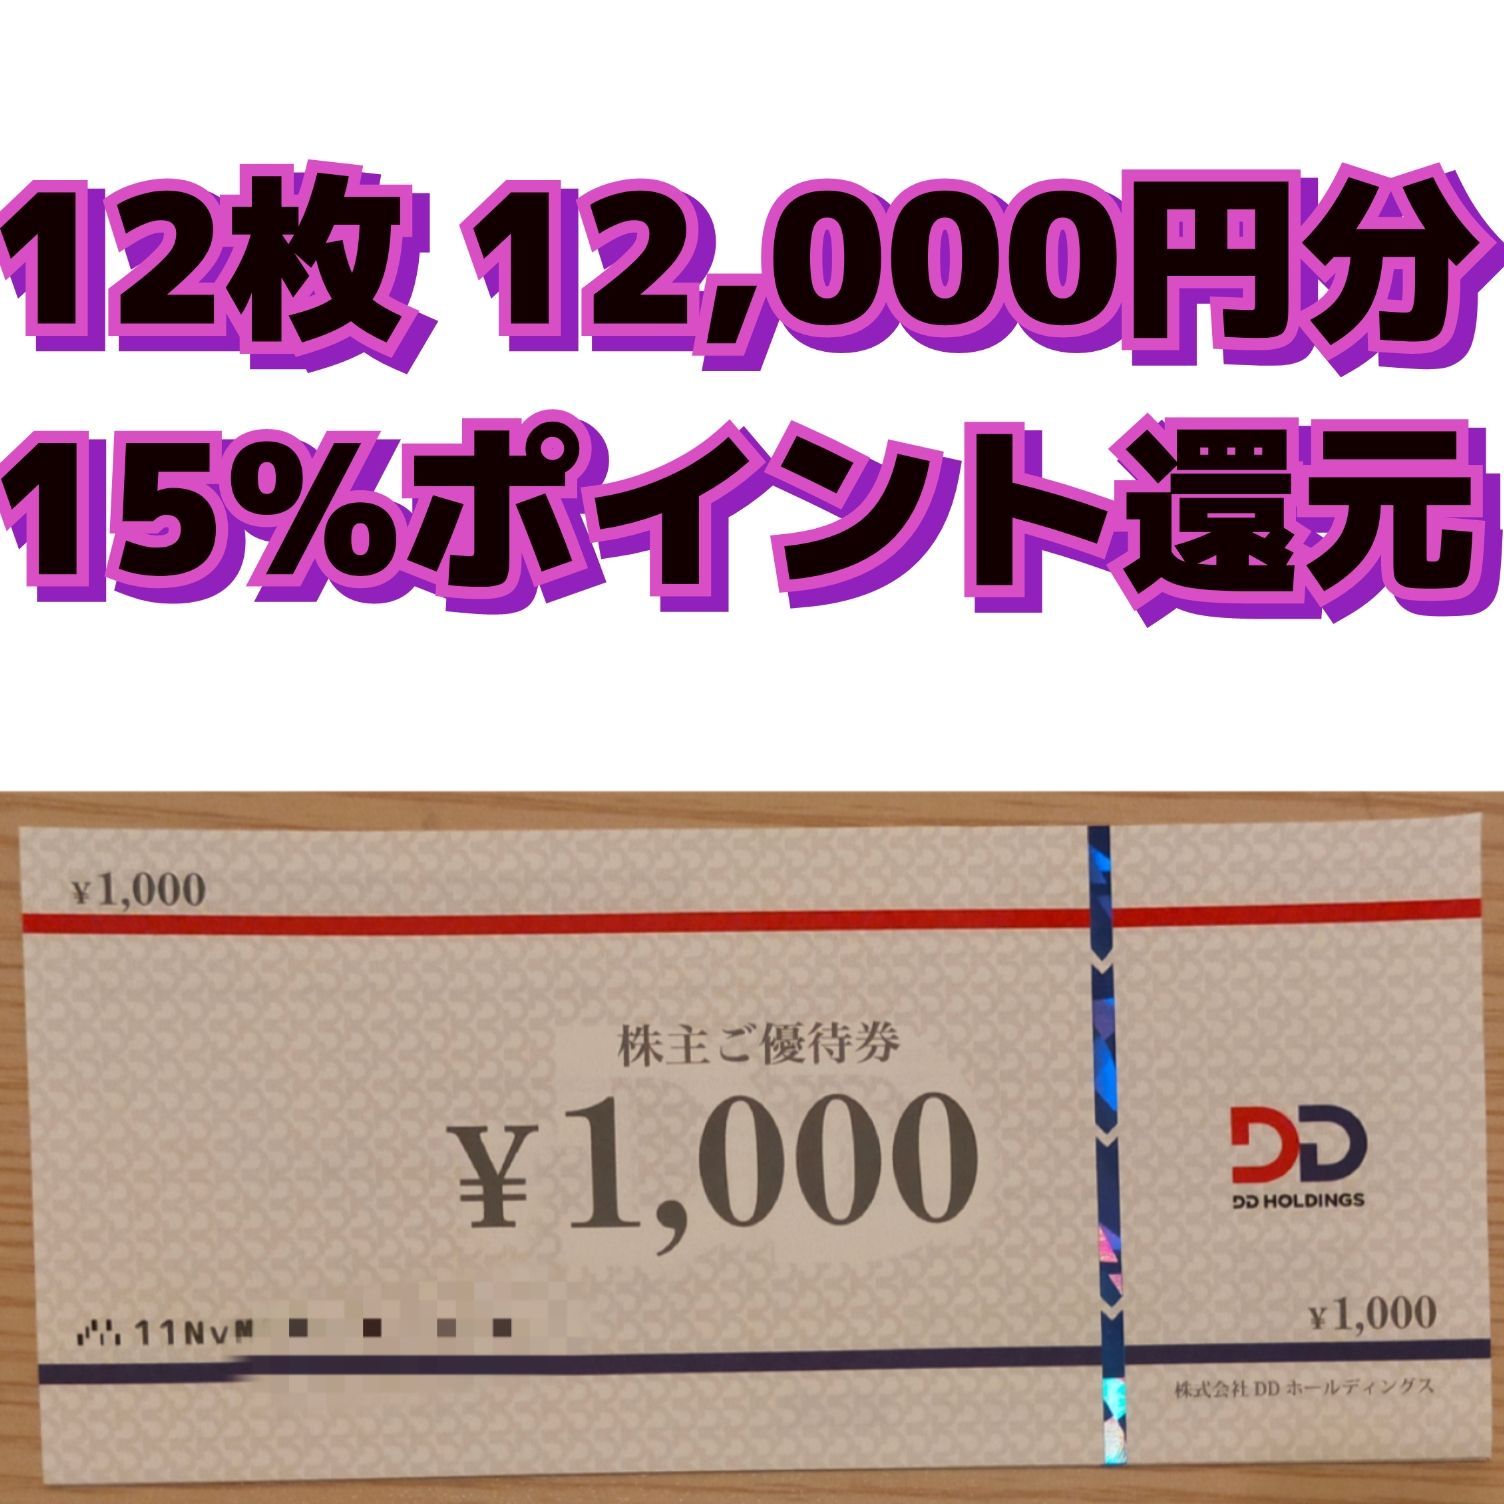 DDグループ 株主優待券 12,000円分